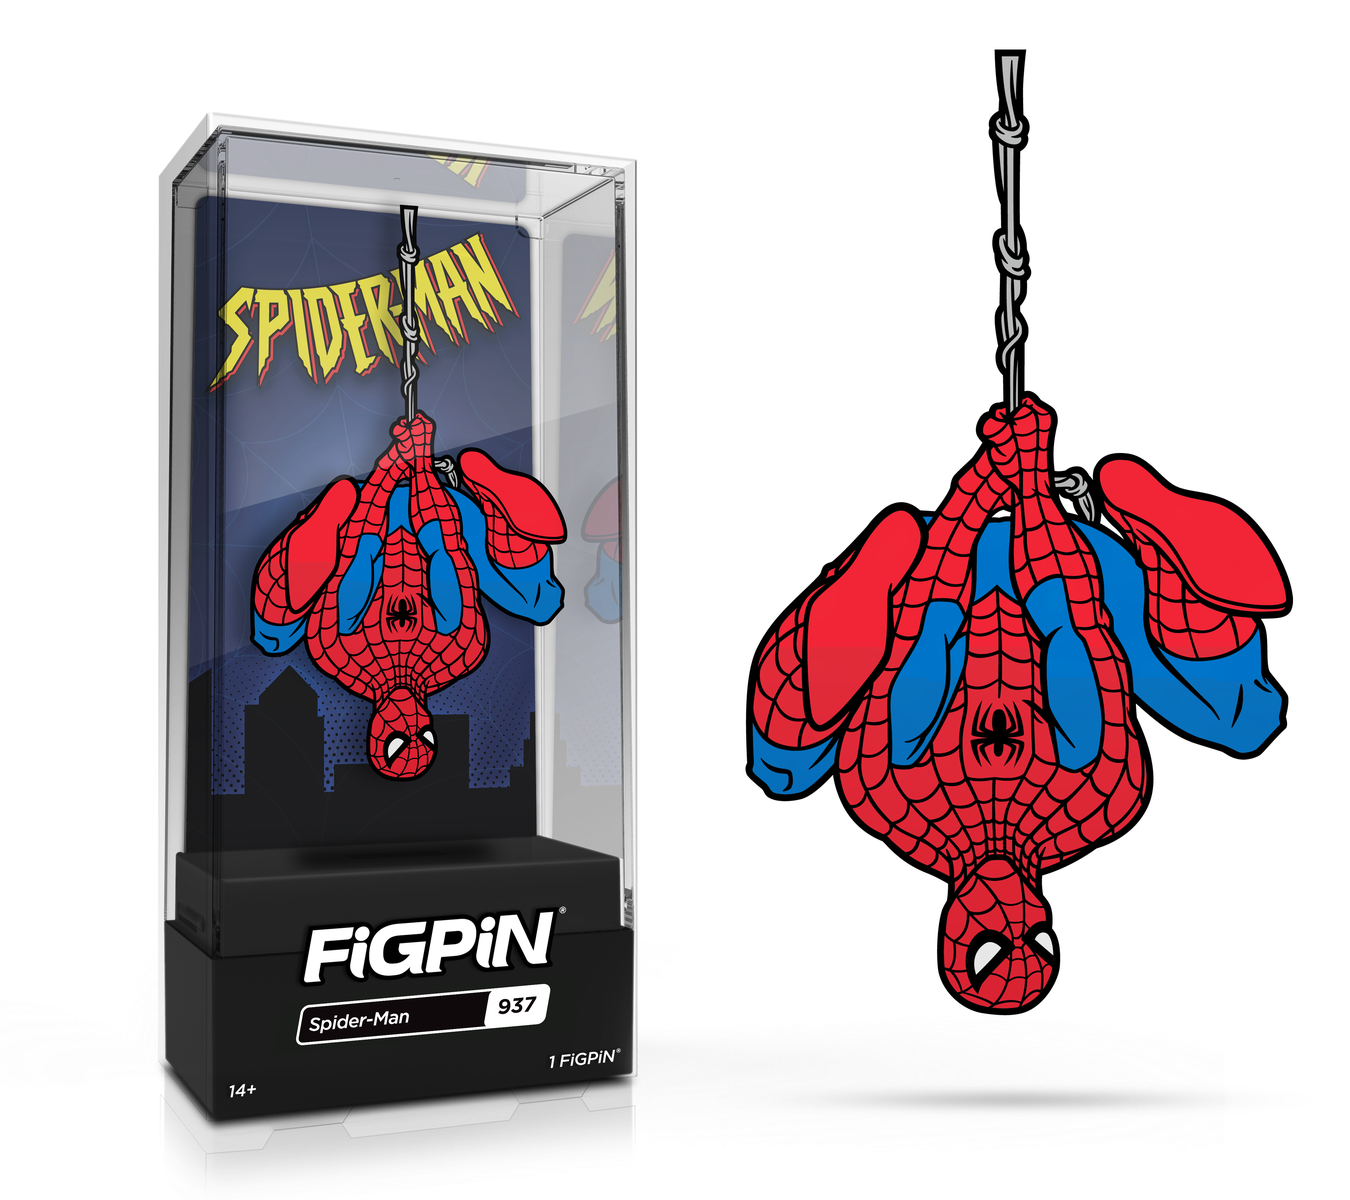 Spider-Man (937) – FiGPiN